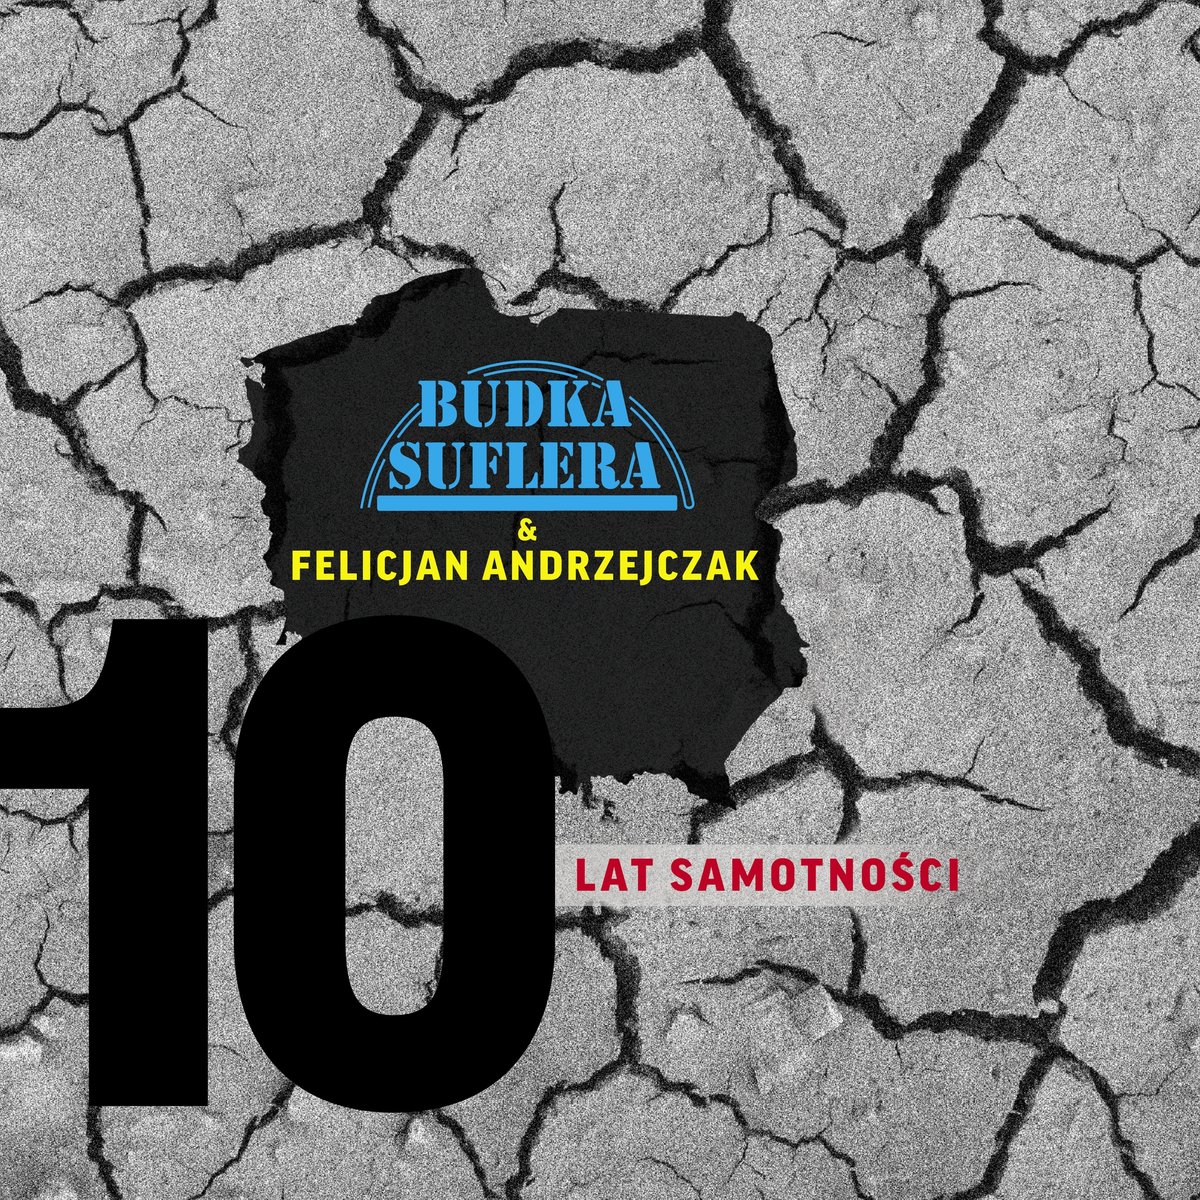 Budka Suflera, Andrzejczak Felicjan - 10 Lat Samotności